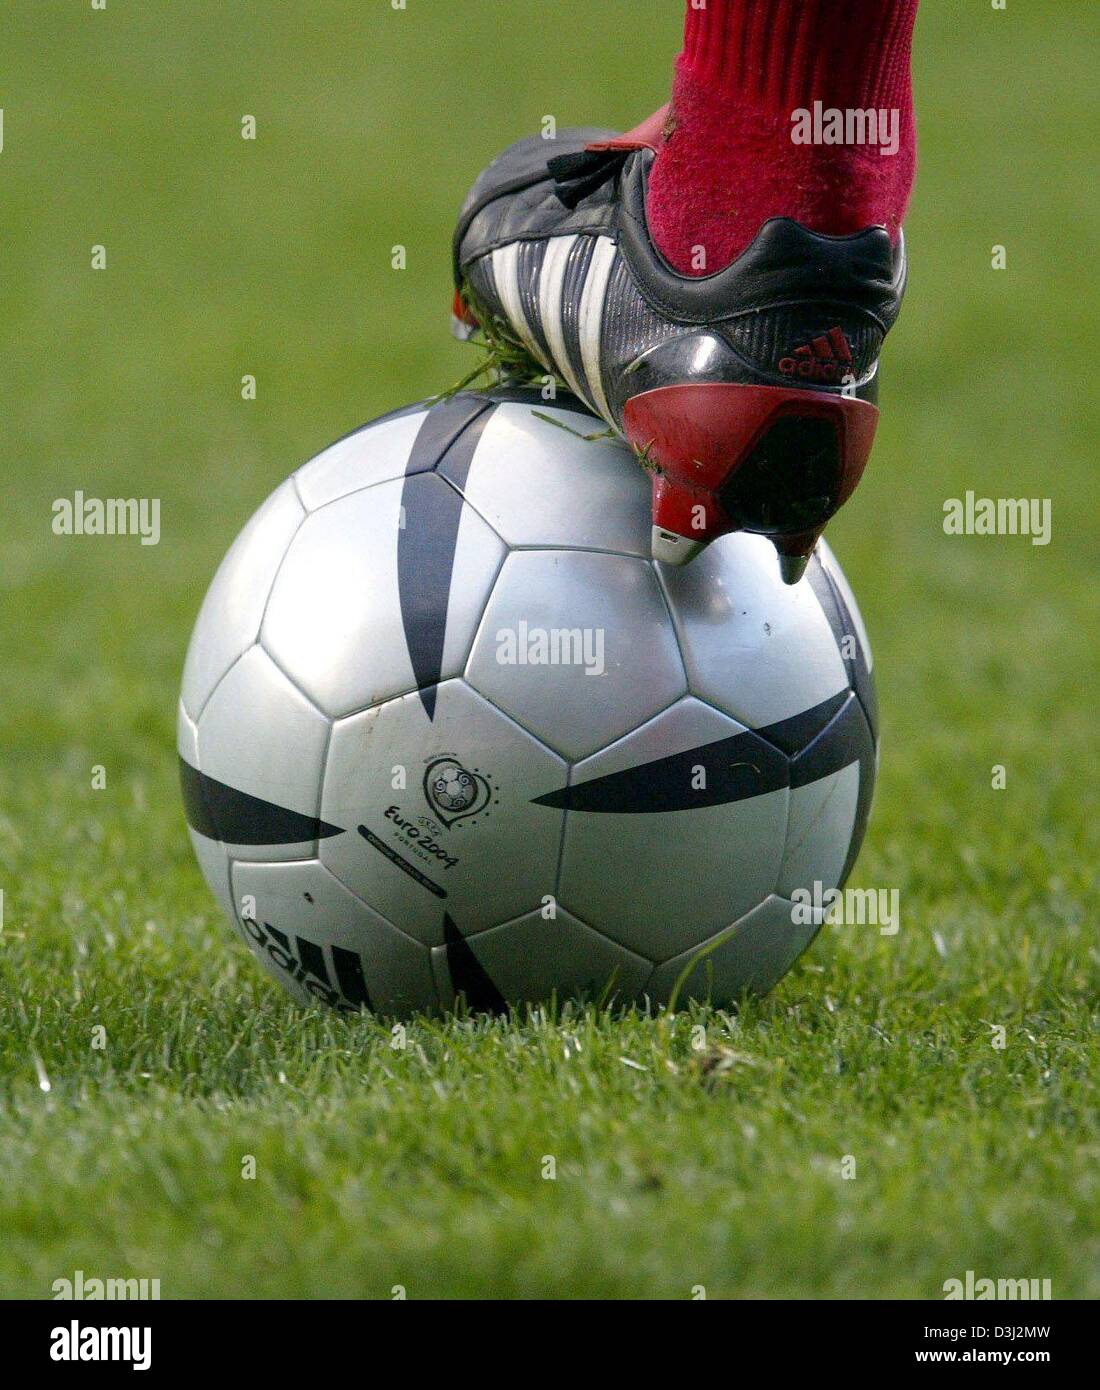 Dpa) Ein Fussball Spieler setzt seinen Fuß auf dem neuen Roteiro-Fußball  von Adidas Sports Company für die kommende Euro 2004 Fußball  Europameisterschaft in Portugal entwickelt, Bild entstand am 7. Februar  2004 in